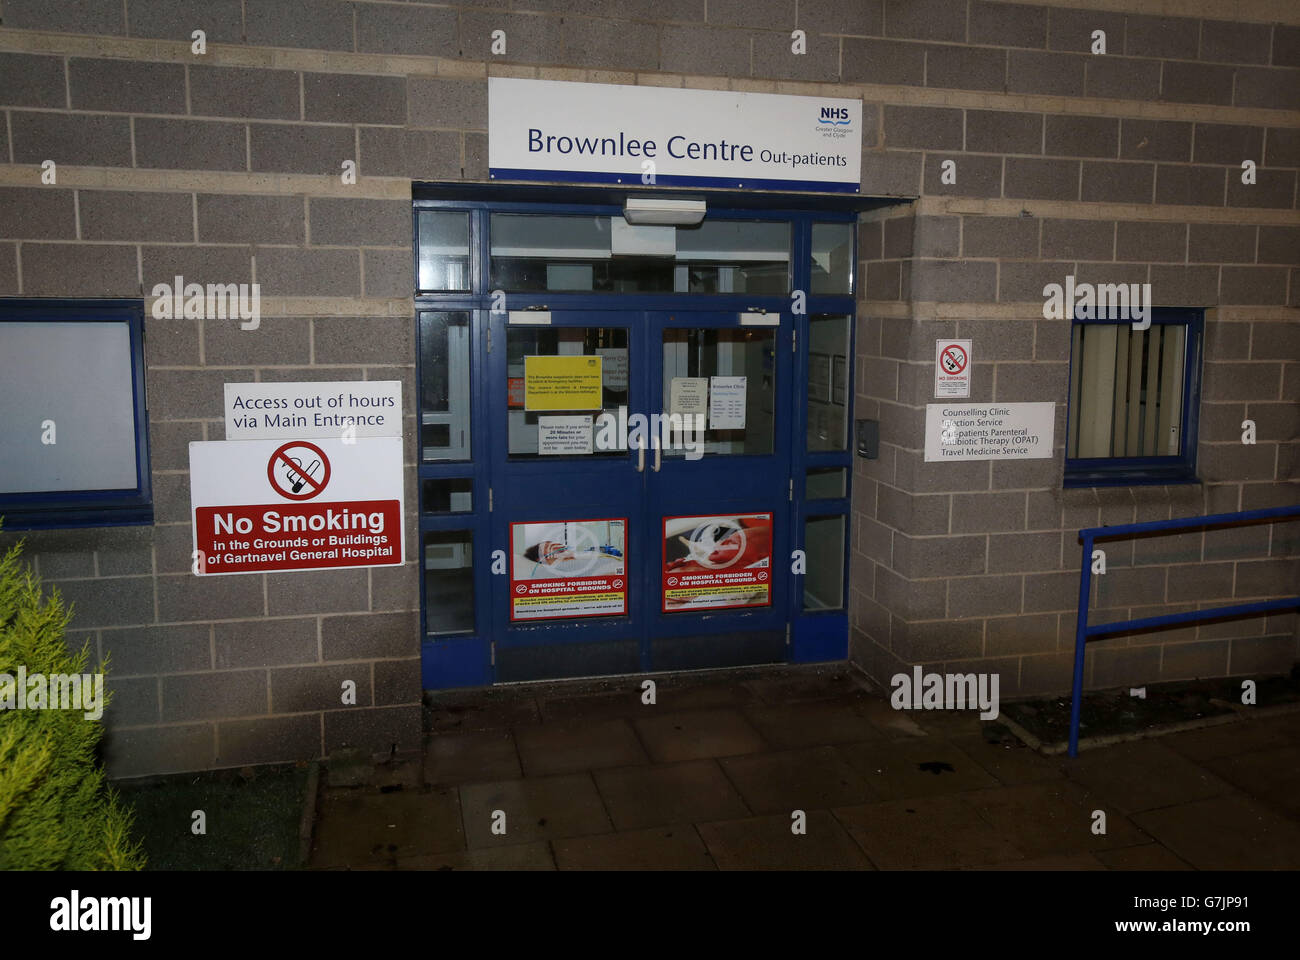 L'entrée de l'unité Brownlee pour les maladies infectieuses au campus de l'hôpital de Gartnavel, à Glasgow, où un travailleur de la santé qui est revenu de Sierra Leone la nuit dernière reçoit un traitement après avoir reçu un diagnostic d'Ebola. Banque D'Images